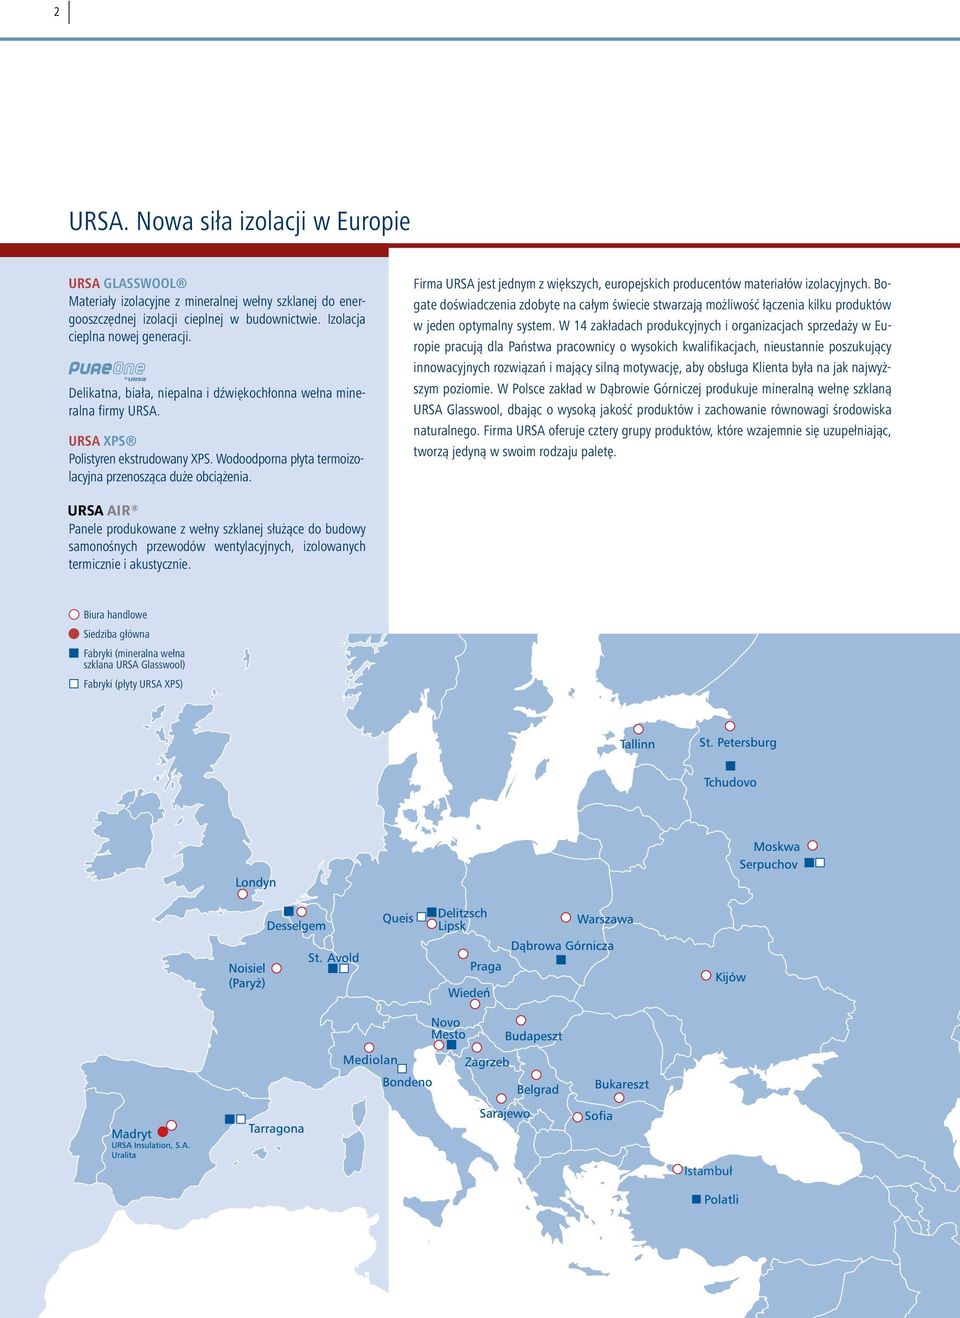 Firma URSA jest jednym z większych, europejskich producentów materiałów izolacyjnych.